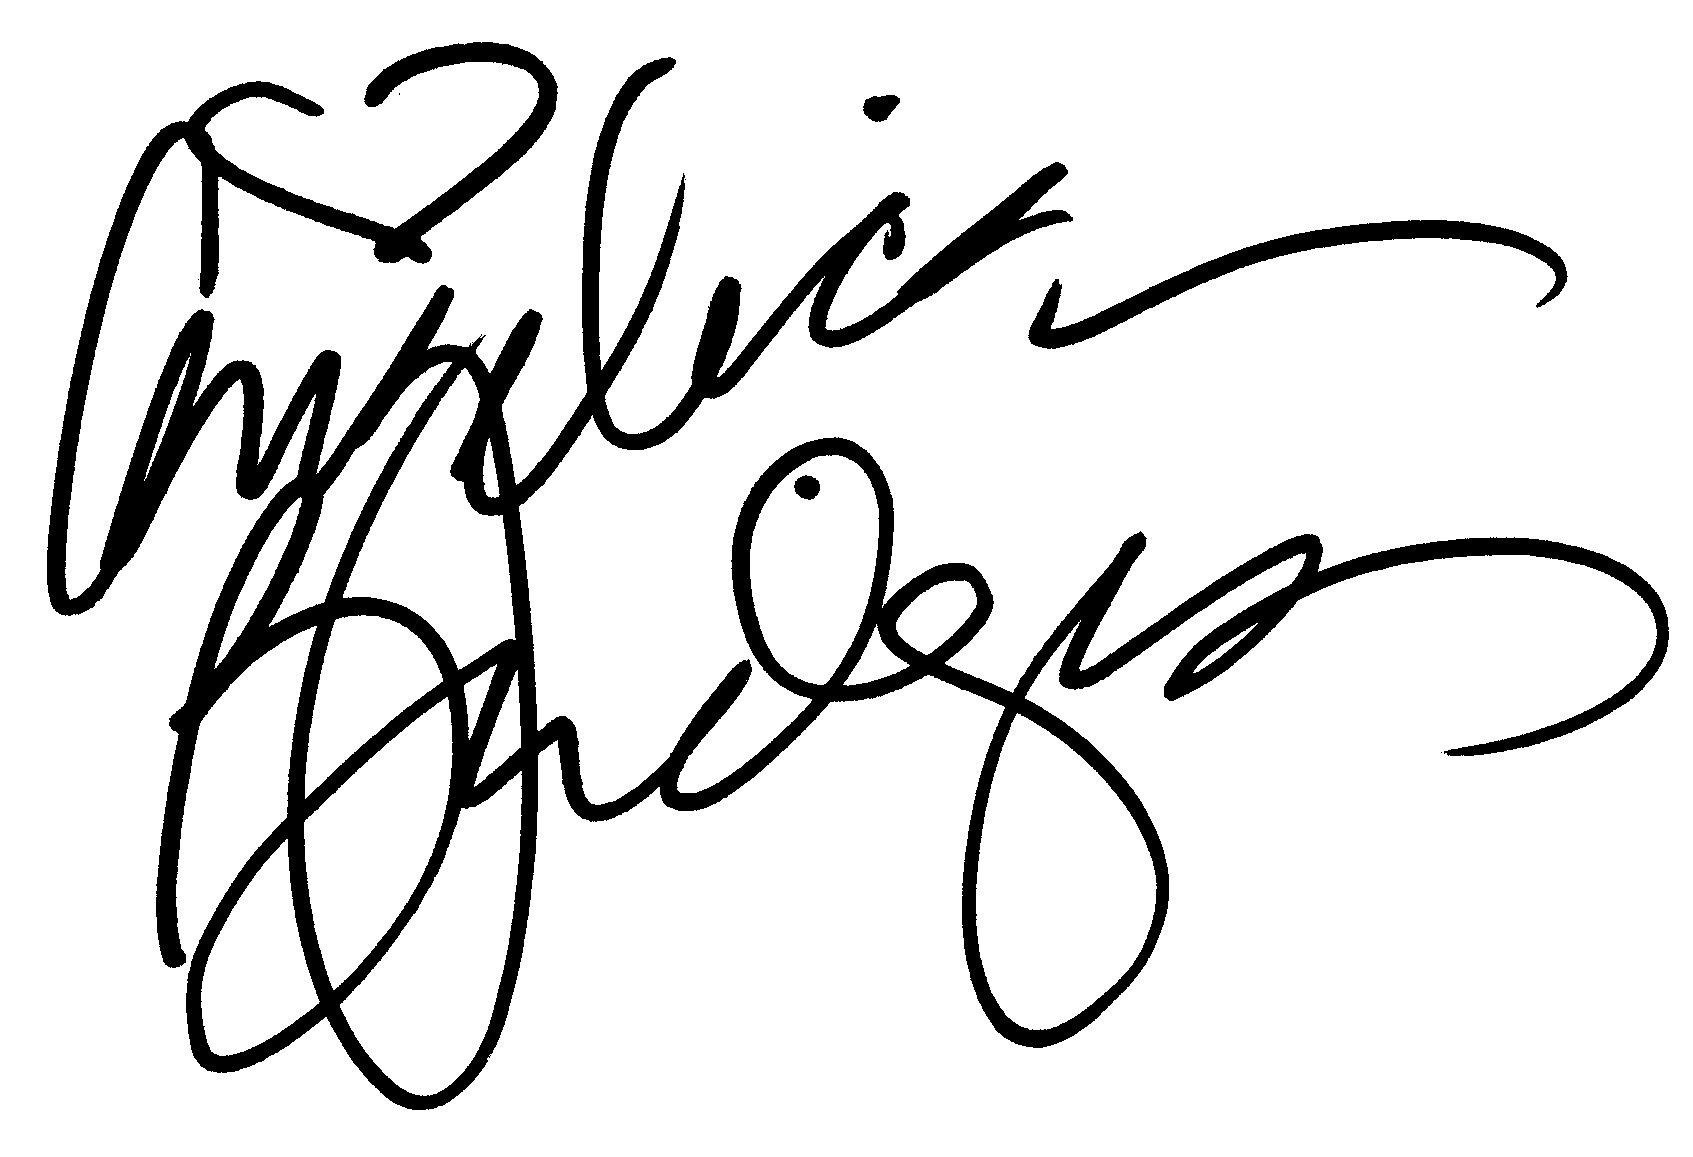 Angelica Bridges autograph facsimile